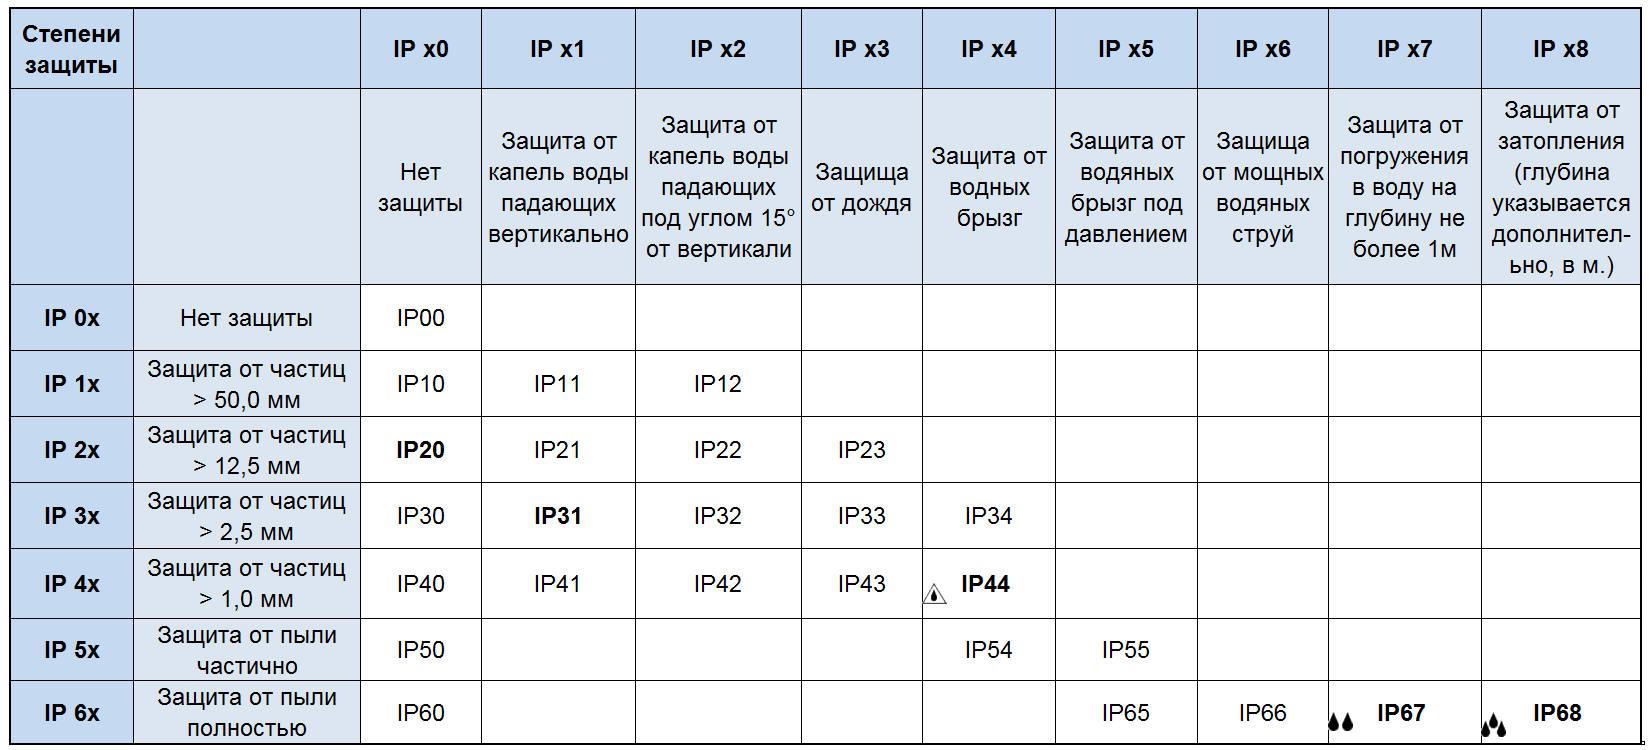 Что означает степень защиты IP — расшифровка, таблица, примеры использования